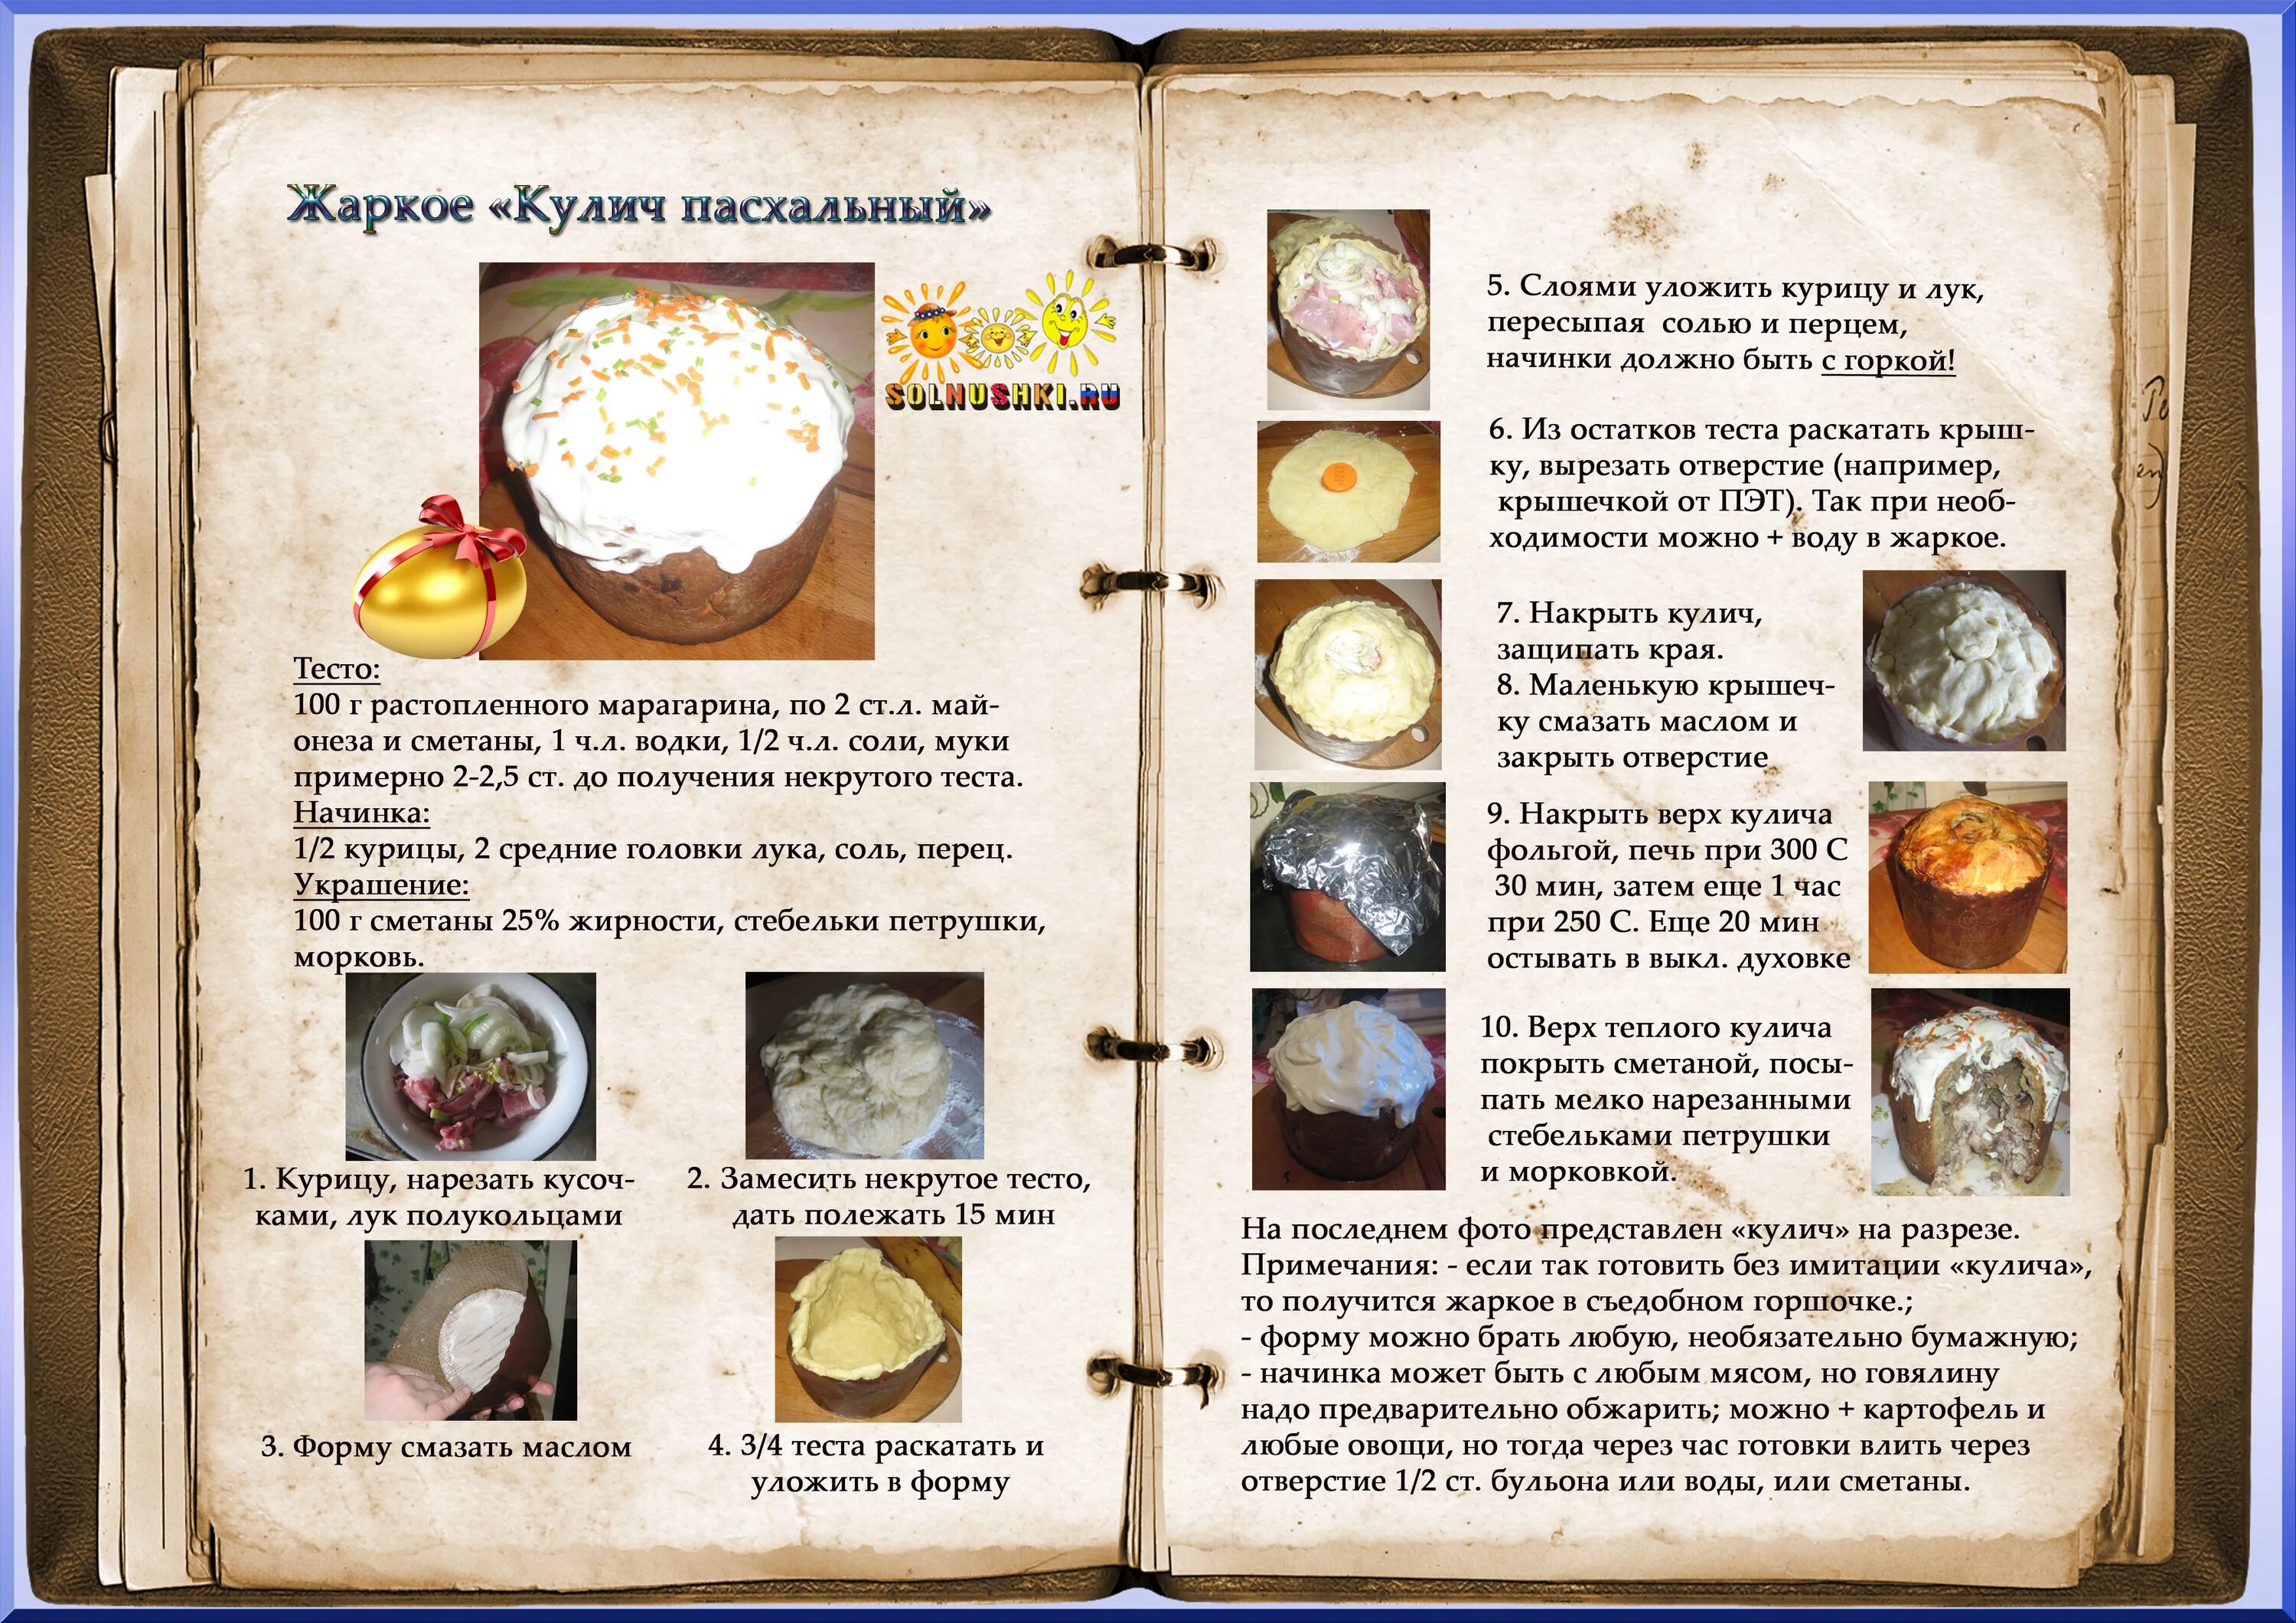 Оформление книги рецептов. Старые рецепты. Кулинария рецепты с фотографиями. Пасхальный кулич рецепты из книги. Расширенный рецепт